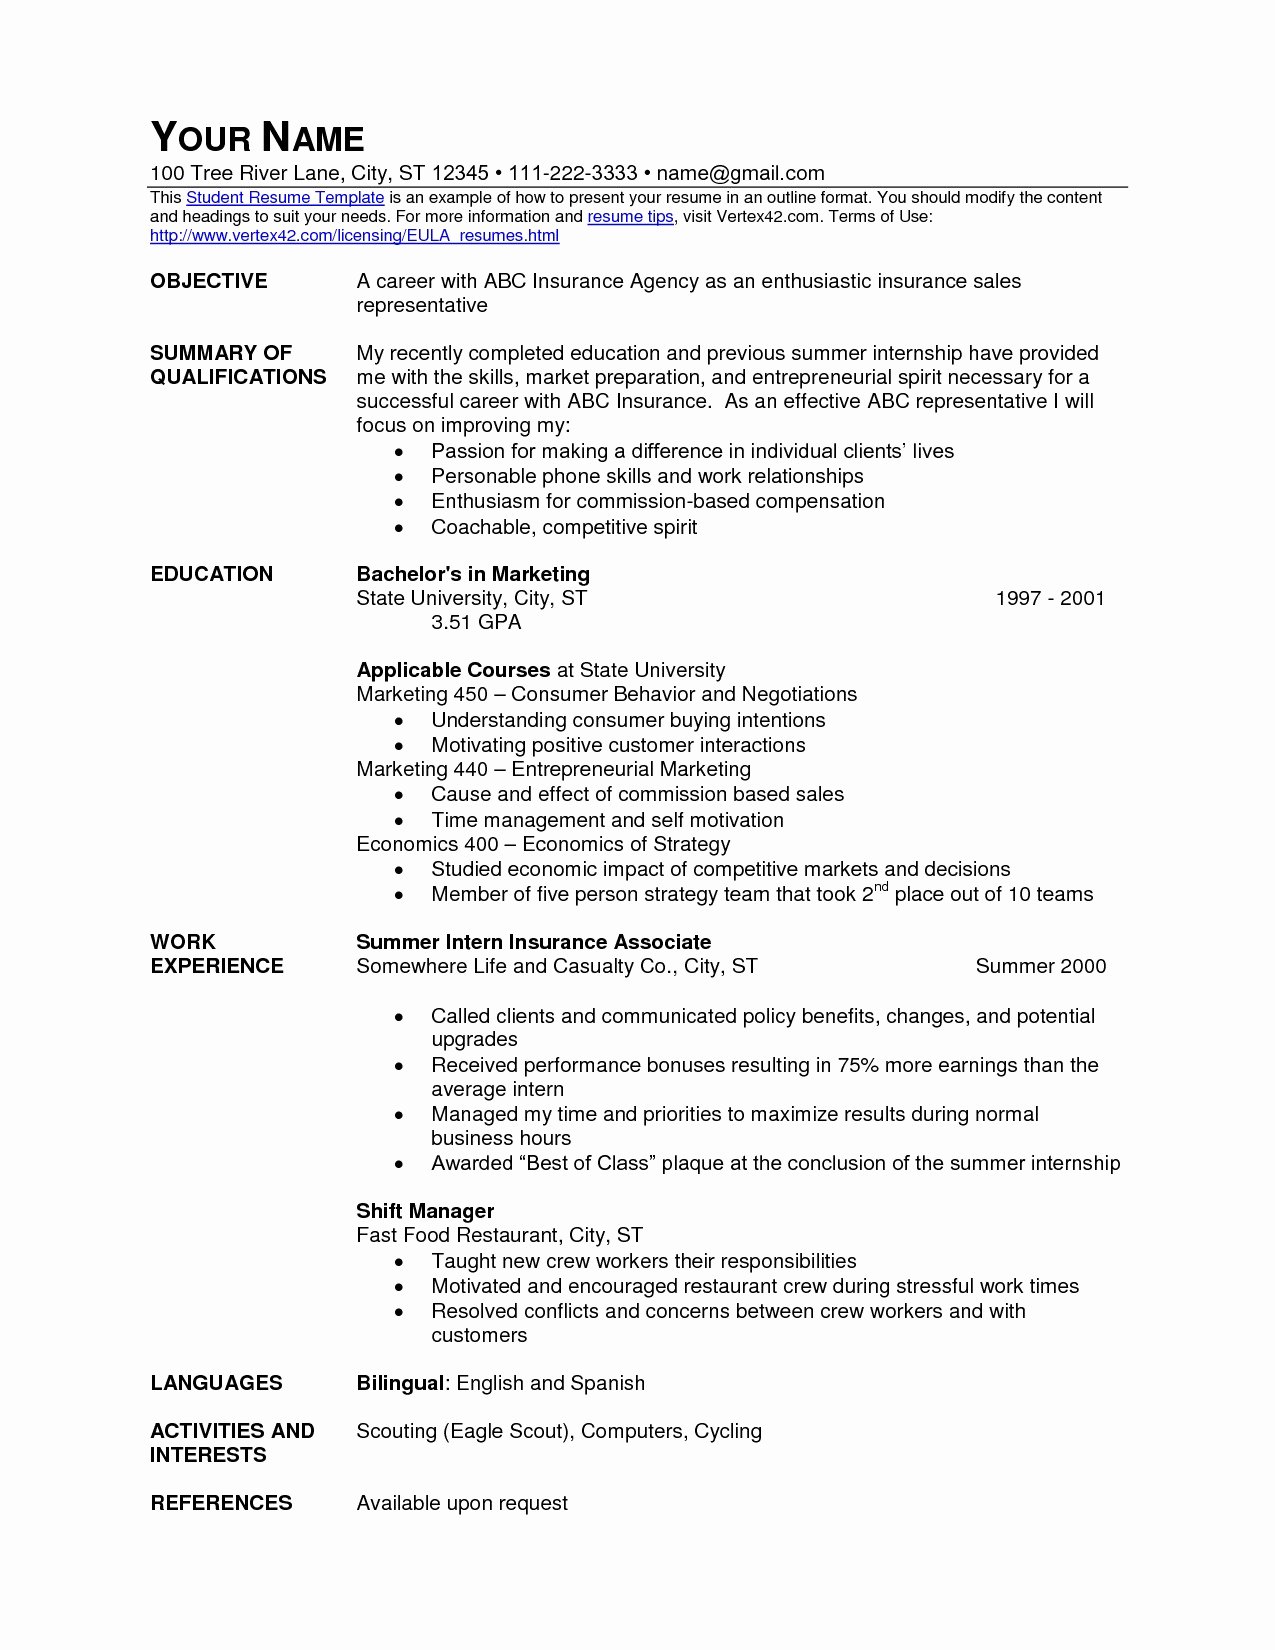 Mcdonalds Job Description Resume Awesome 42 Clean Mcdonalds Crew Member Job Description for Resume